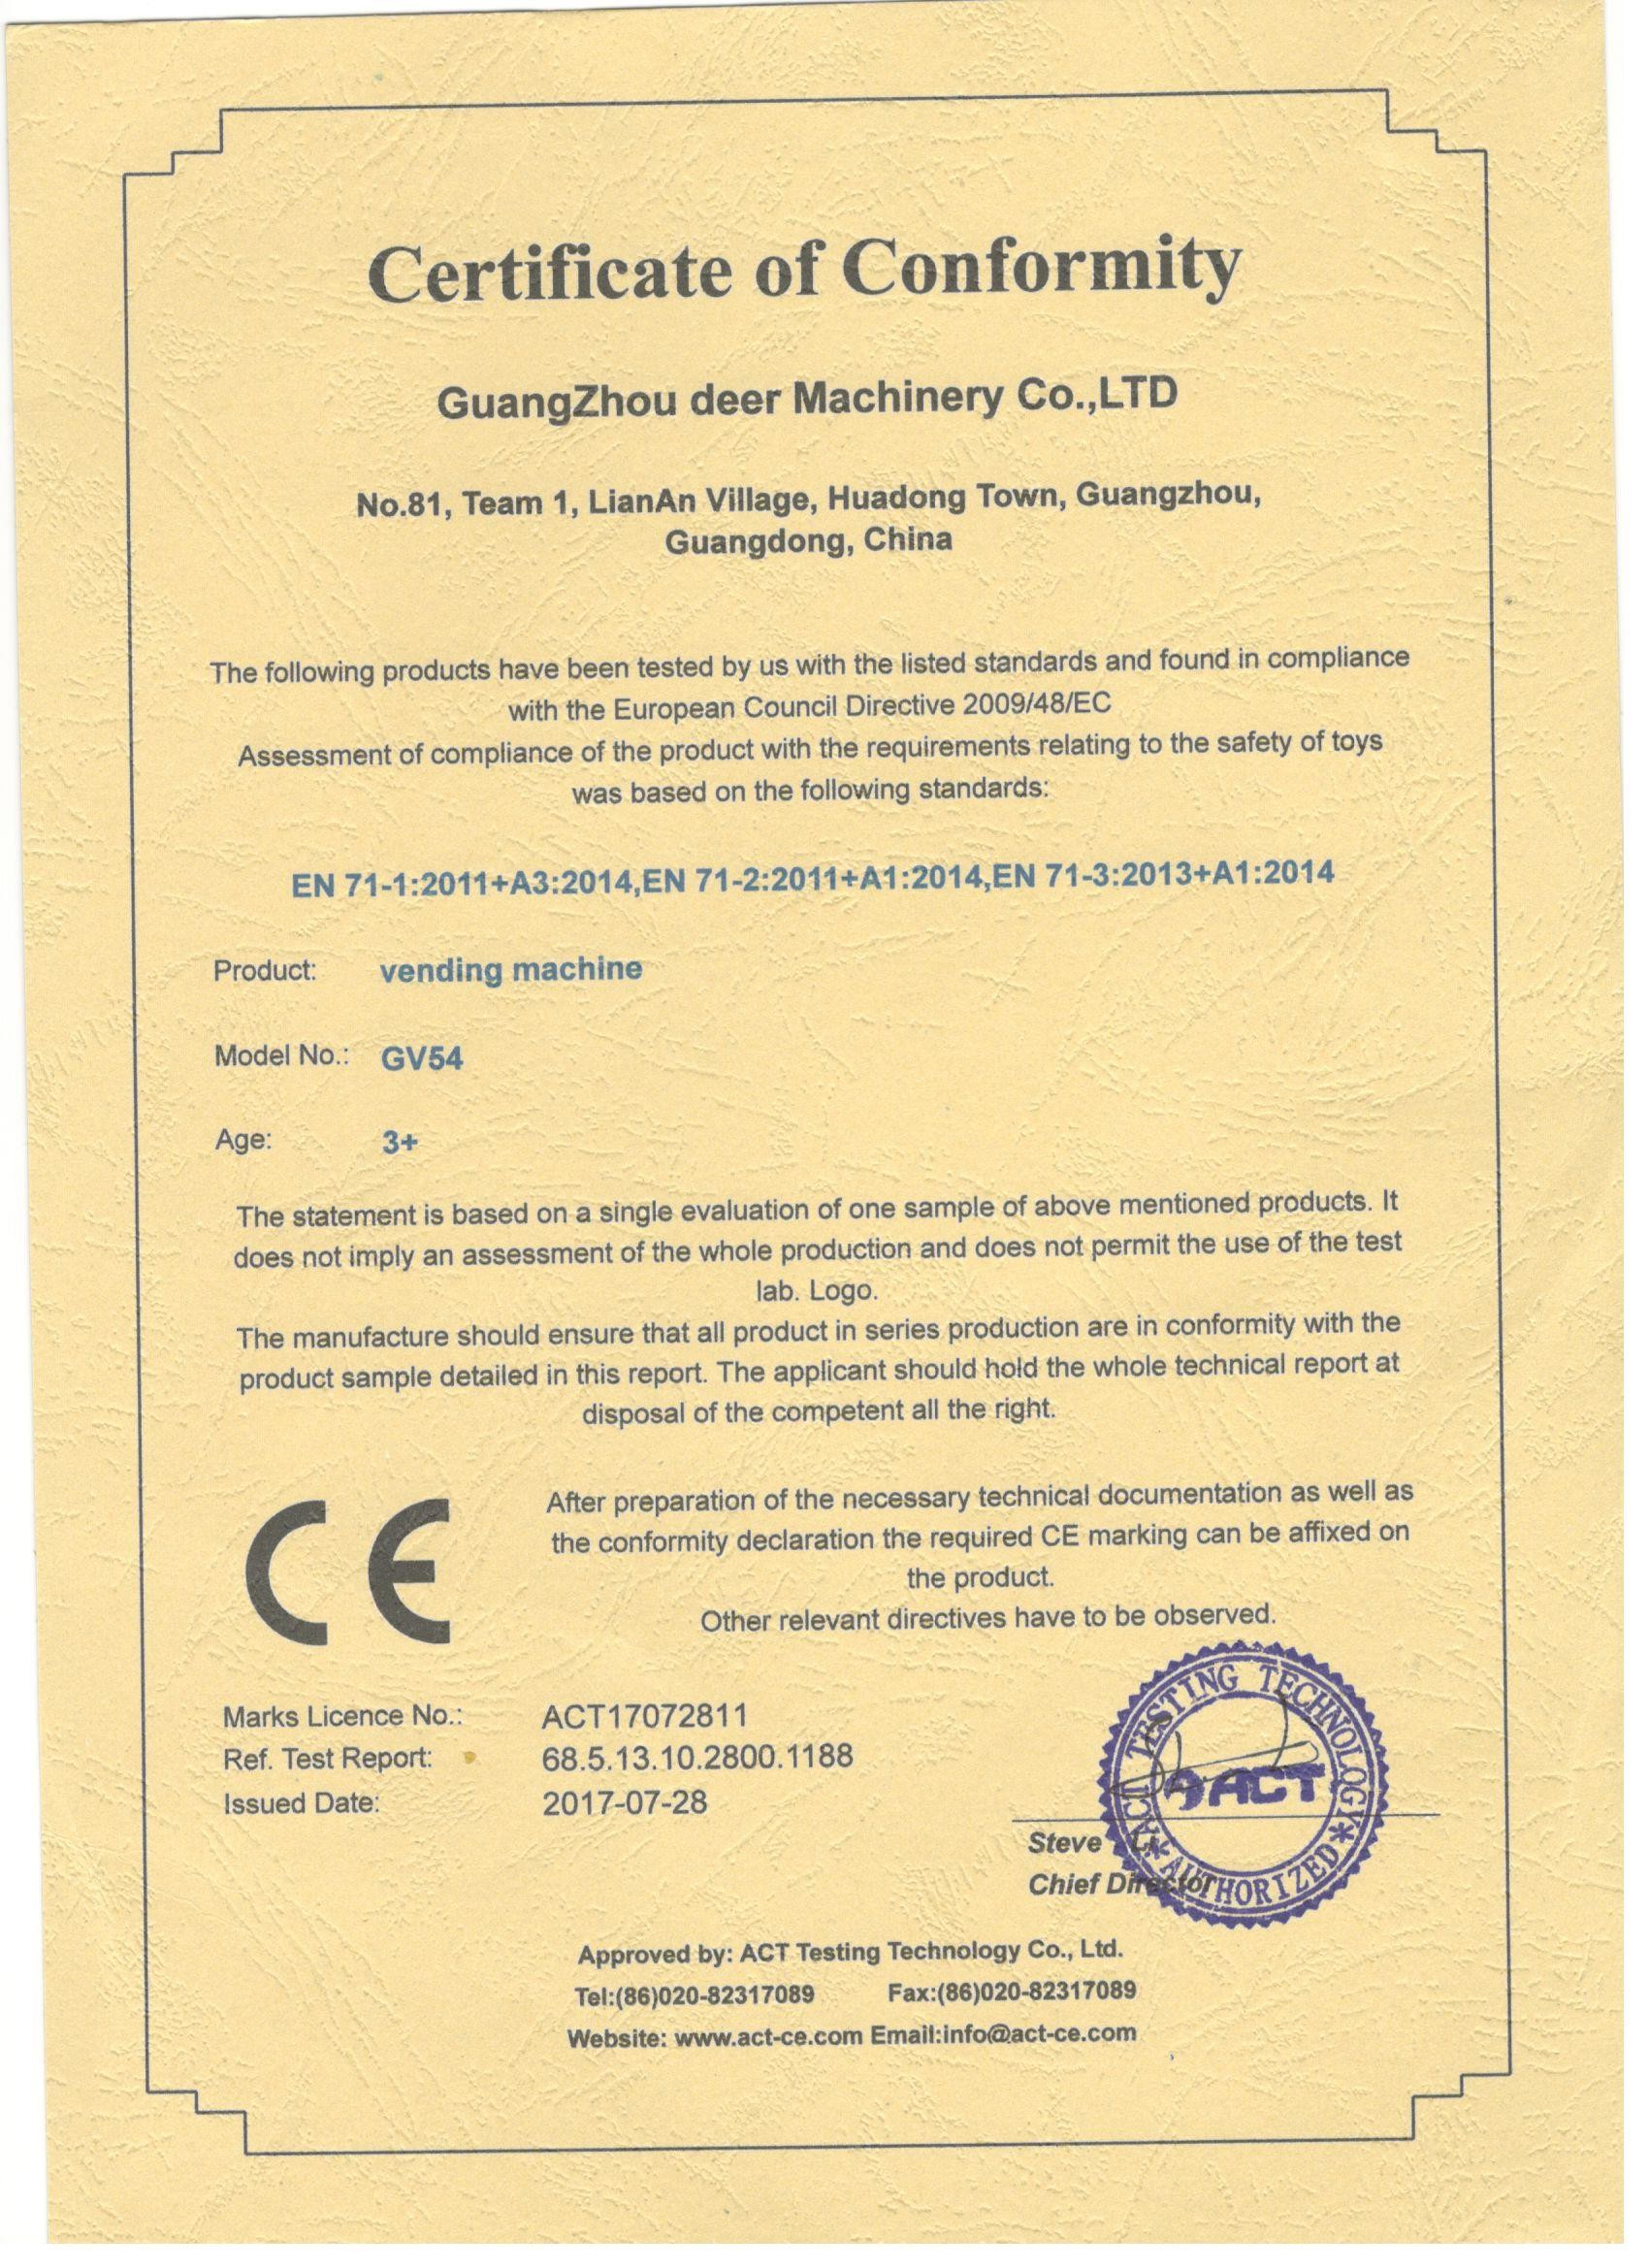 Cina Guangzhou Deer Machinery Co., Ltd. Sertifikasi